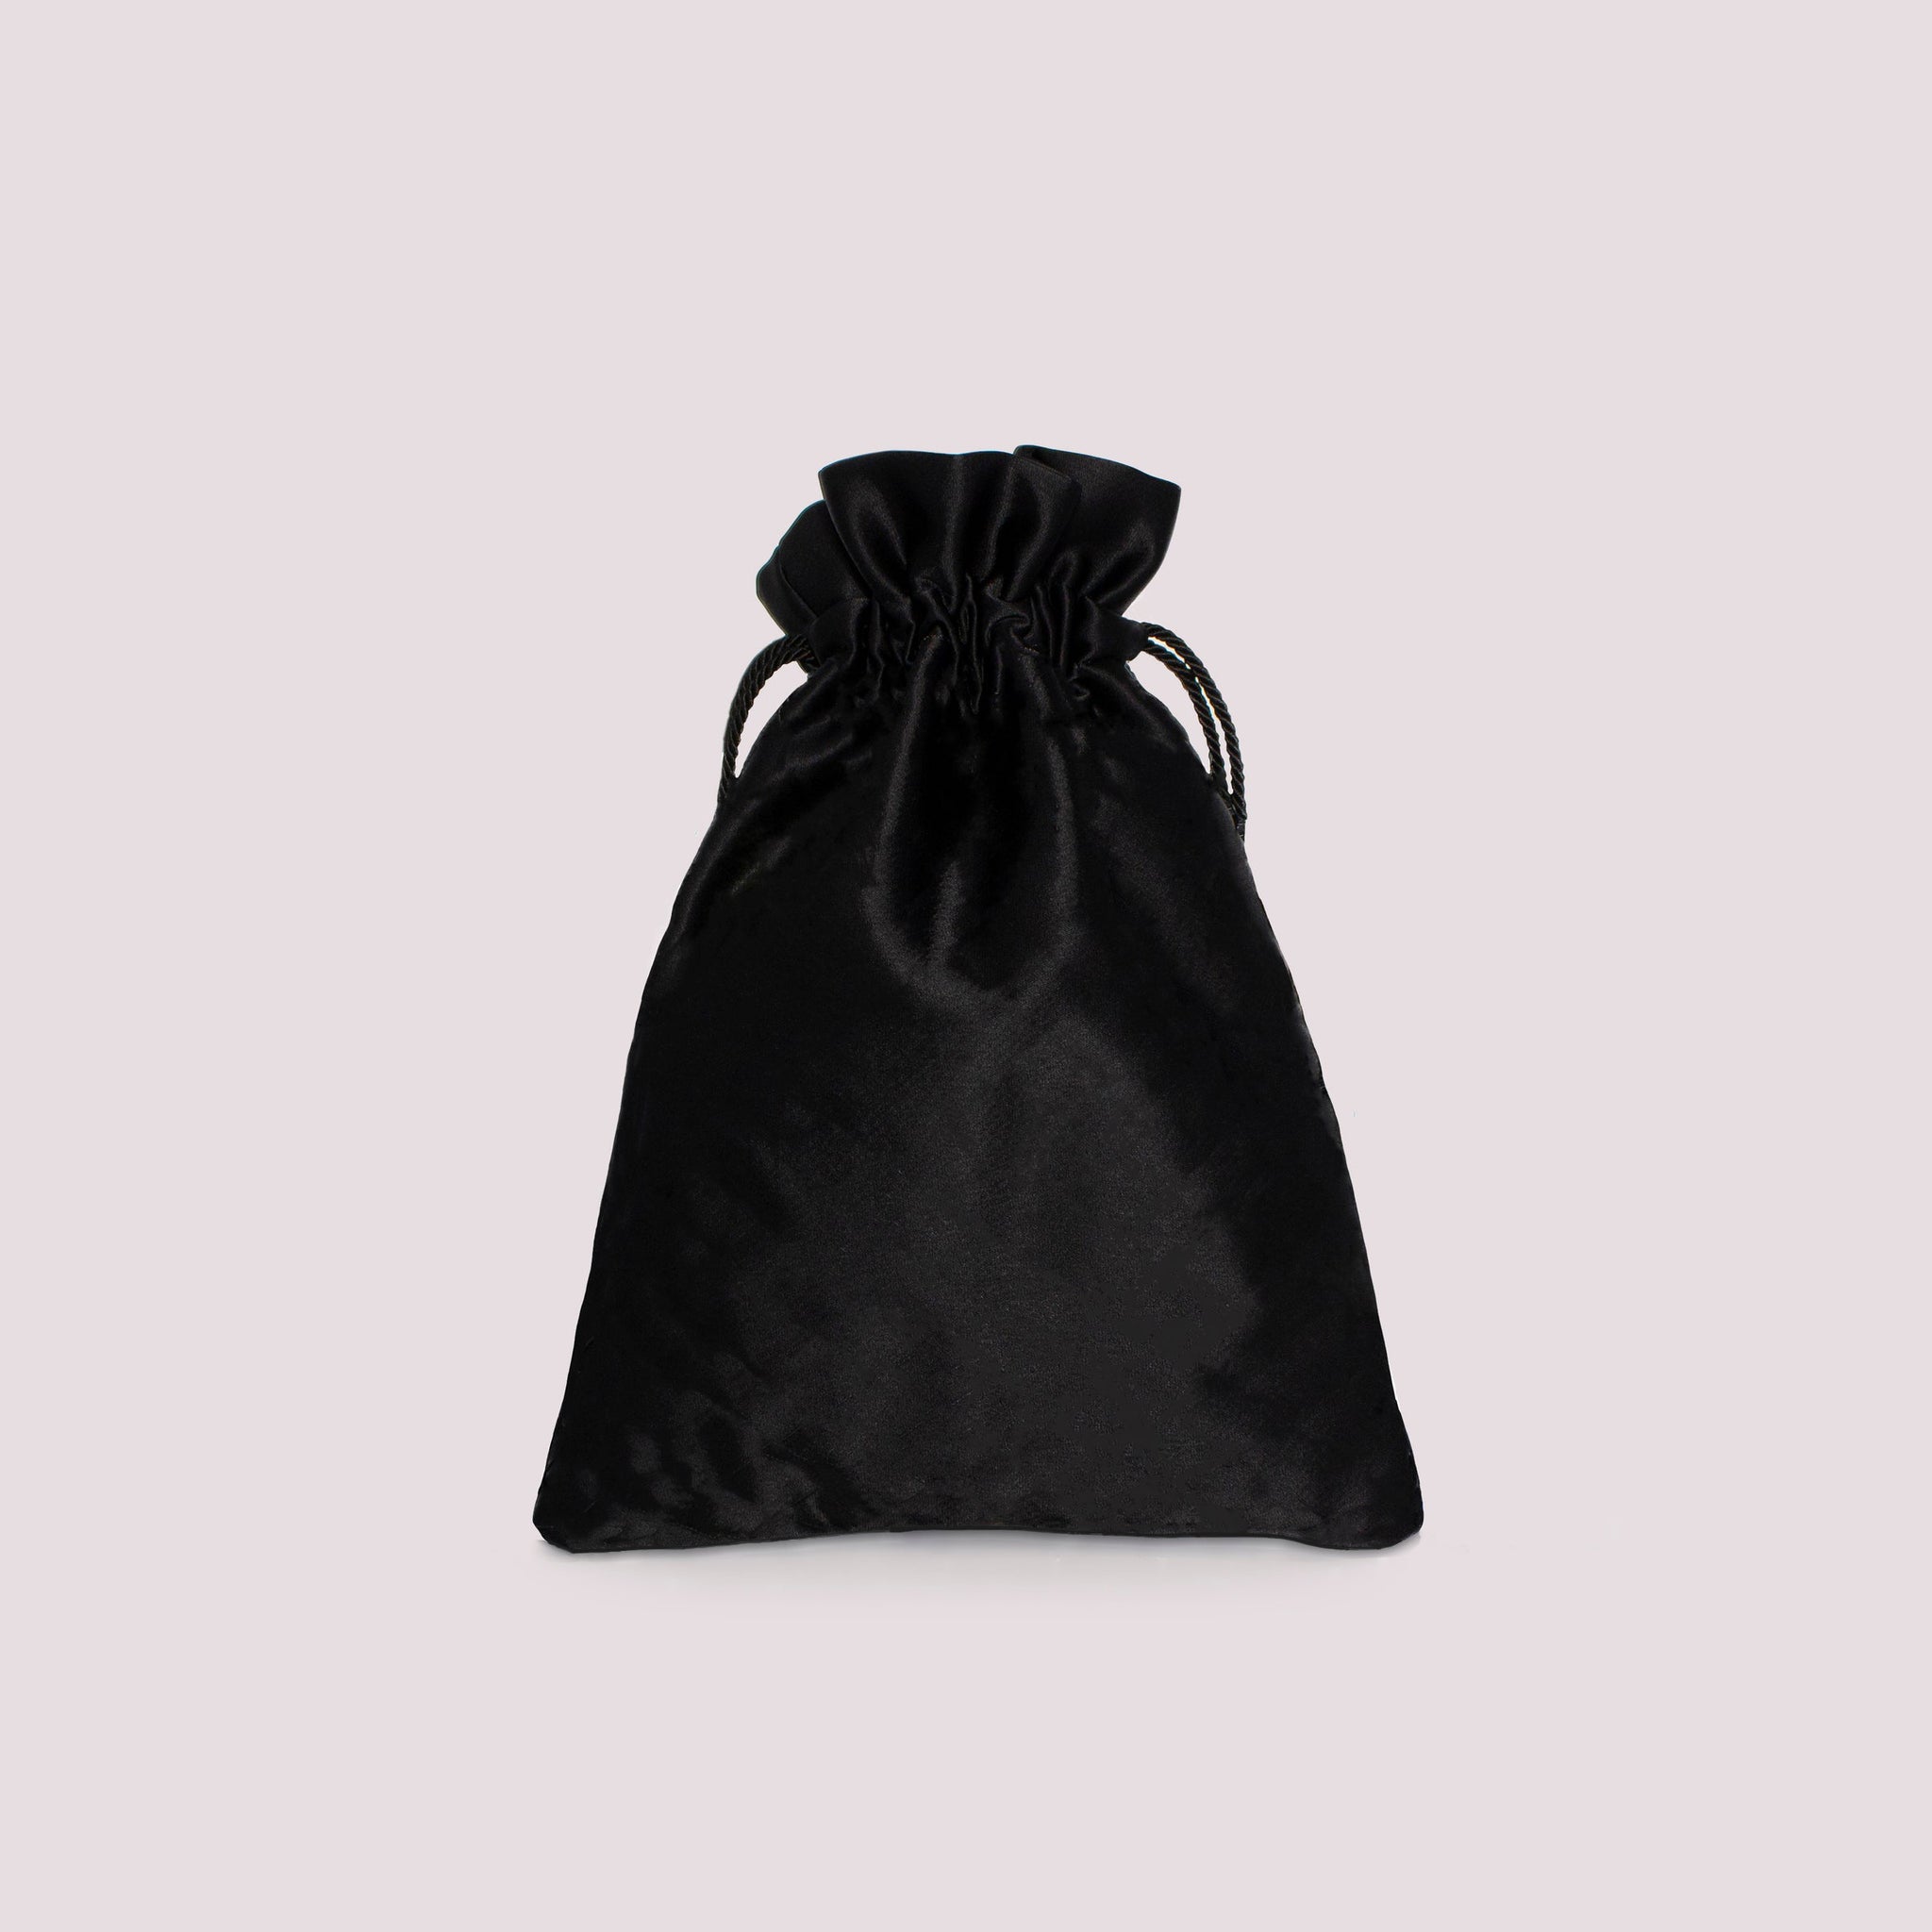 Giulia flat bag in colorazione nera